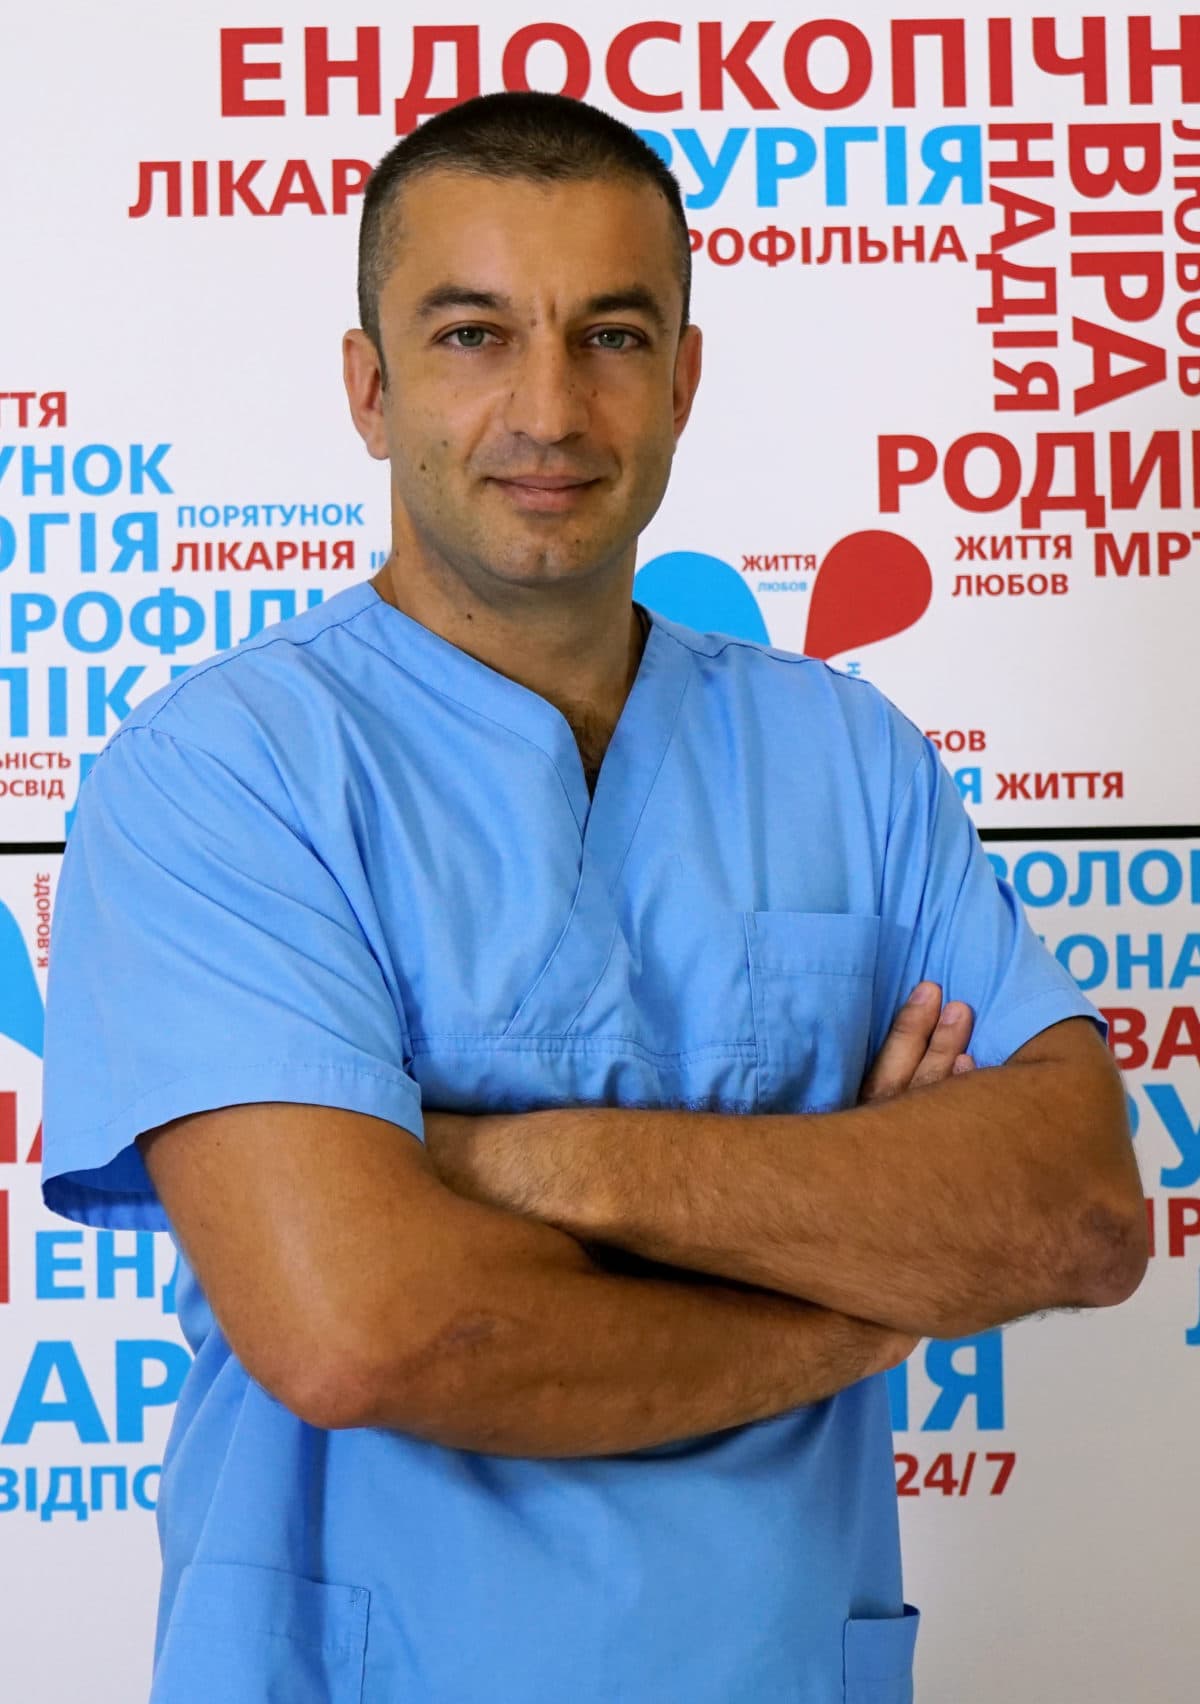 Експертна кардіологія та кардіохірургія 24/7 - 5 - svekaterina.ua